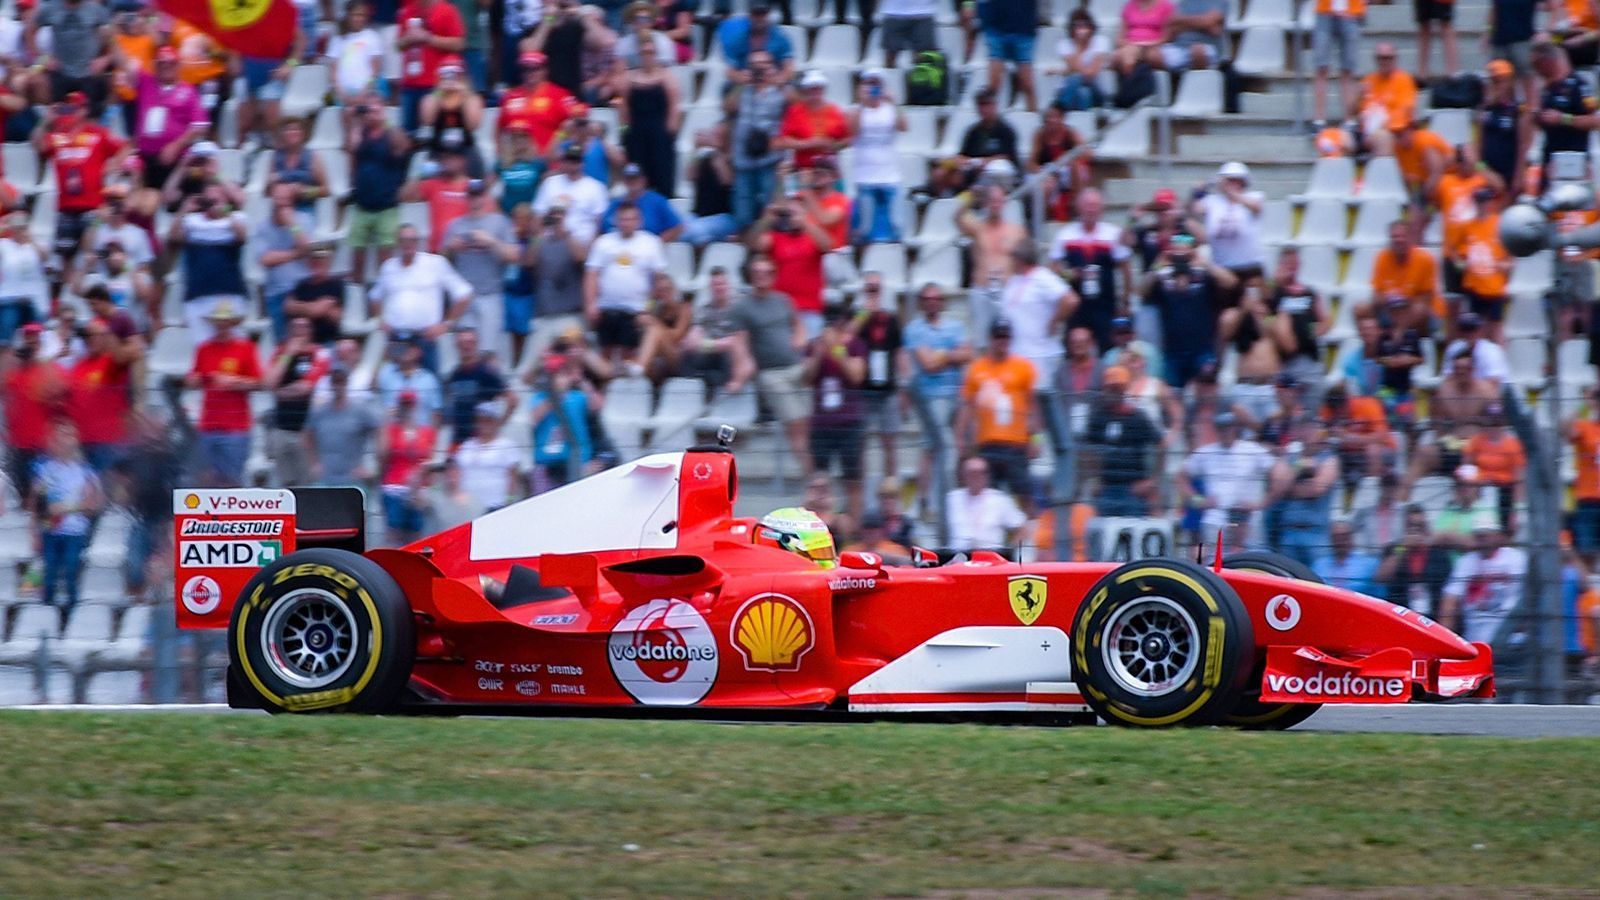 
                <strong>Mick Schumacher fährt im Weltmeister-Ferrari seines Vaters in Hockenheim</strong><br>
                Obwohl Schumacher nur drei Runden dreht und es sich nur um eine Show-Fahrt handelt, sind die Tribünen gut besucht.
              